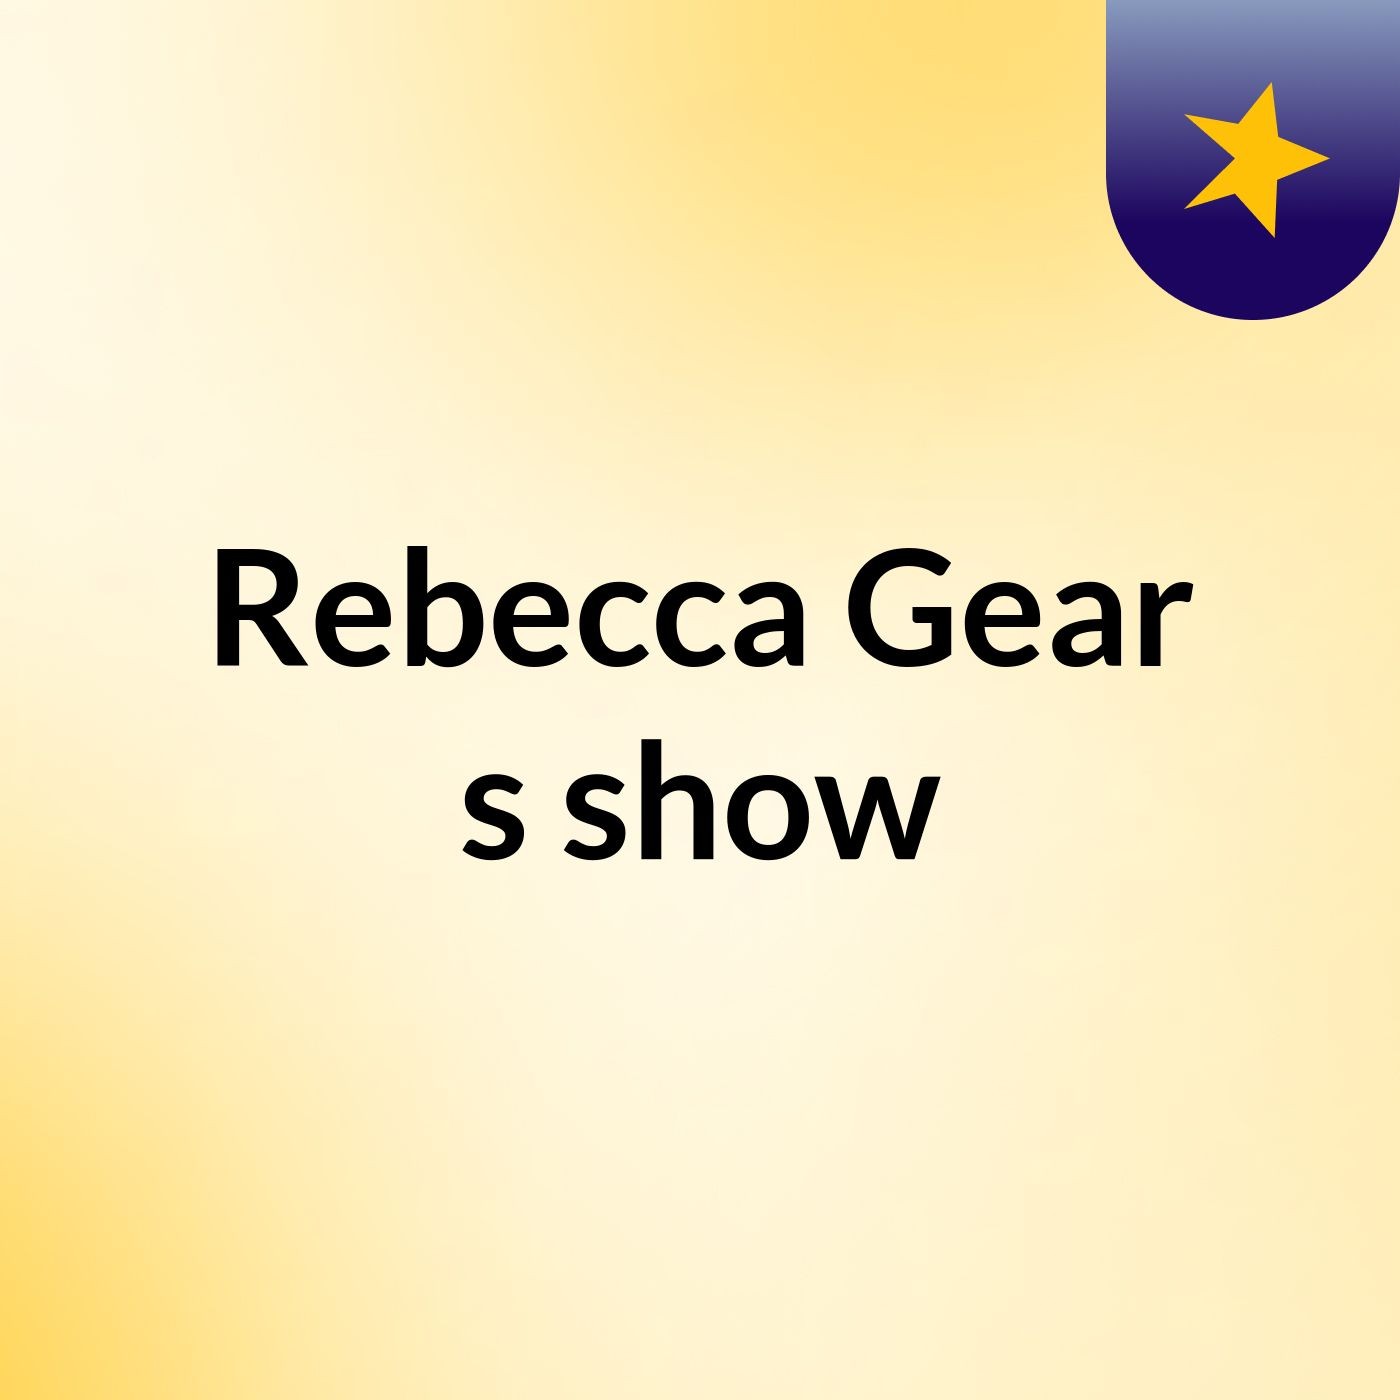 Rebecca Gear